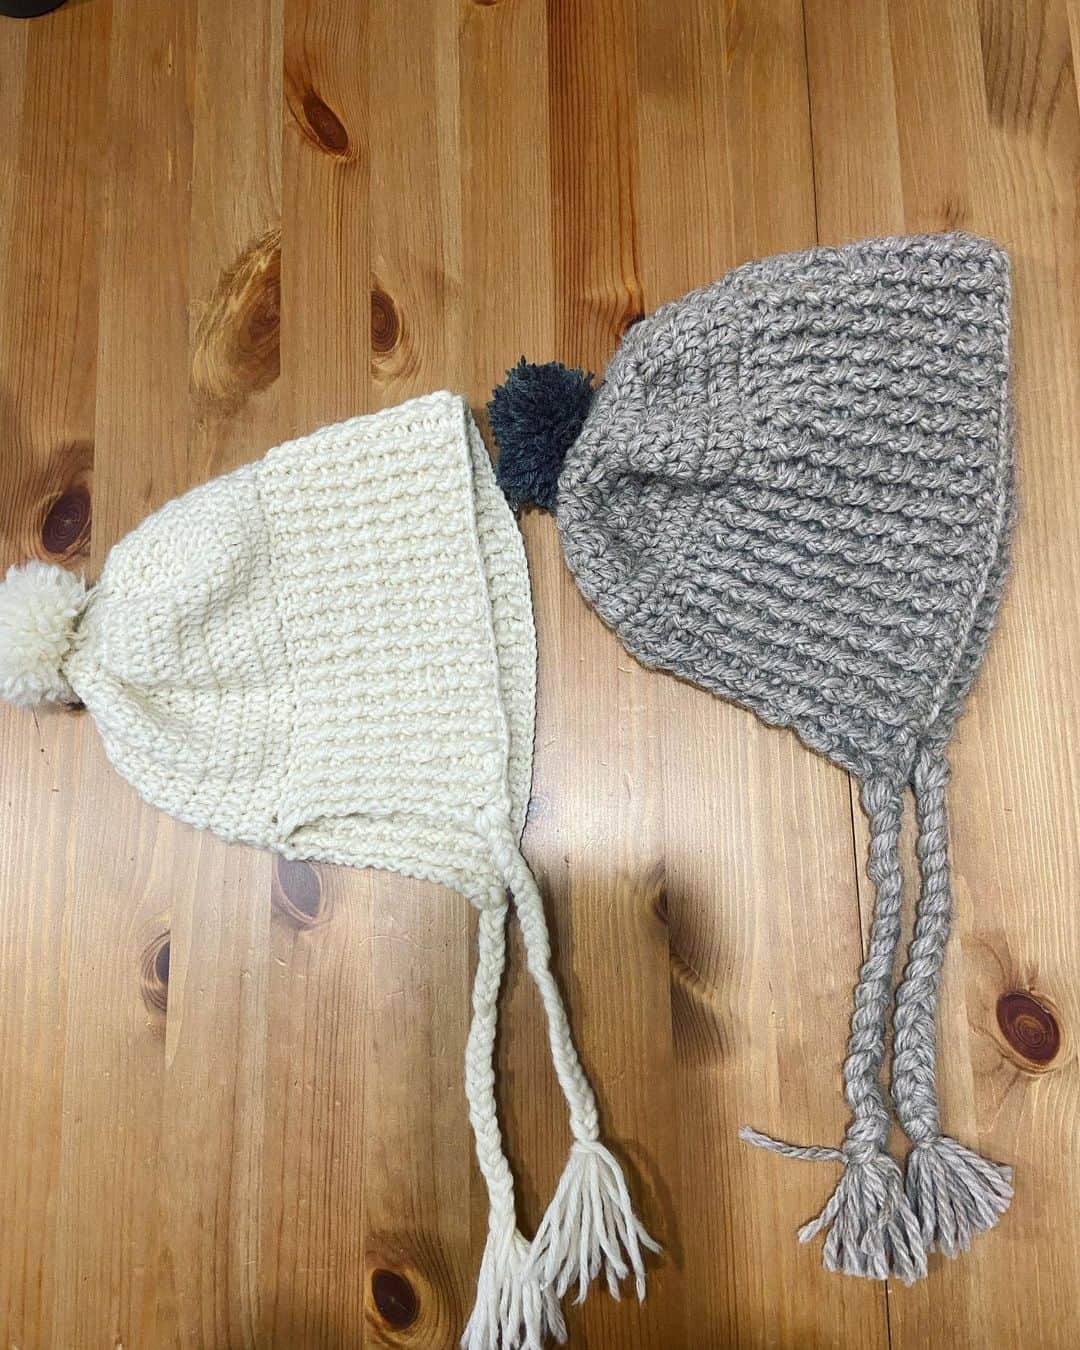 Julie Wataiのインスタグラム：「コツコツ続けてる編み物。娘と私のお揃いのボンネット型ニット帽を作りました。アルパカ系だから暖かい！(もうすぐ春だけど)」